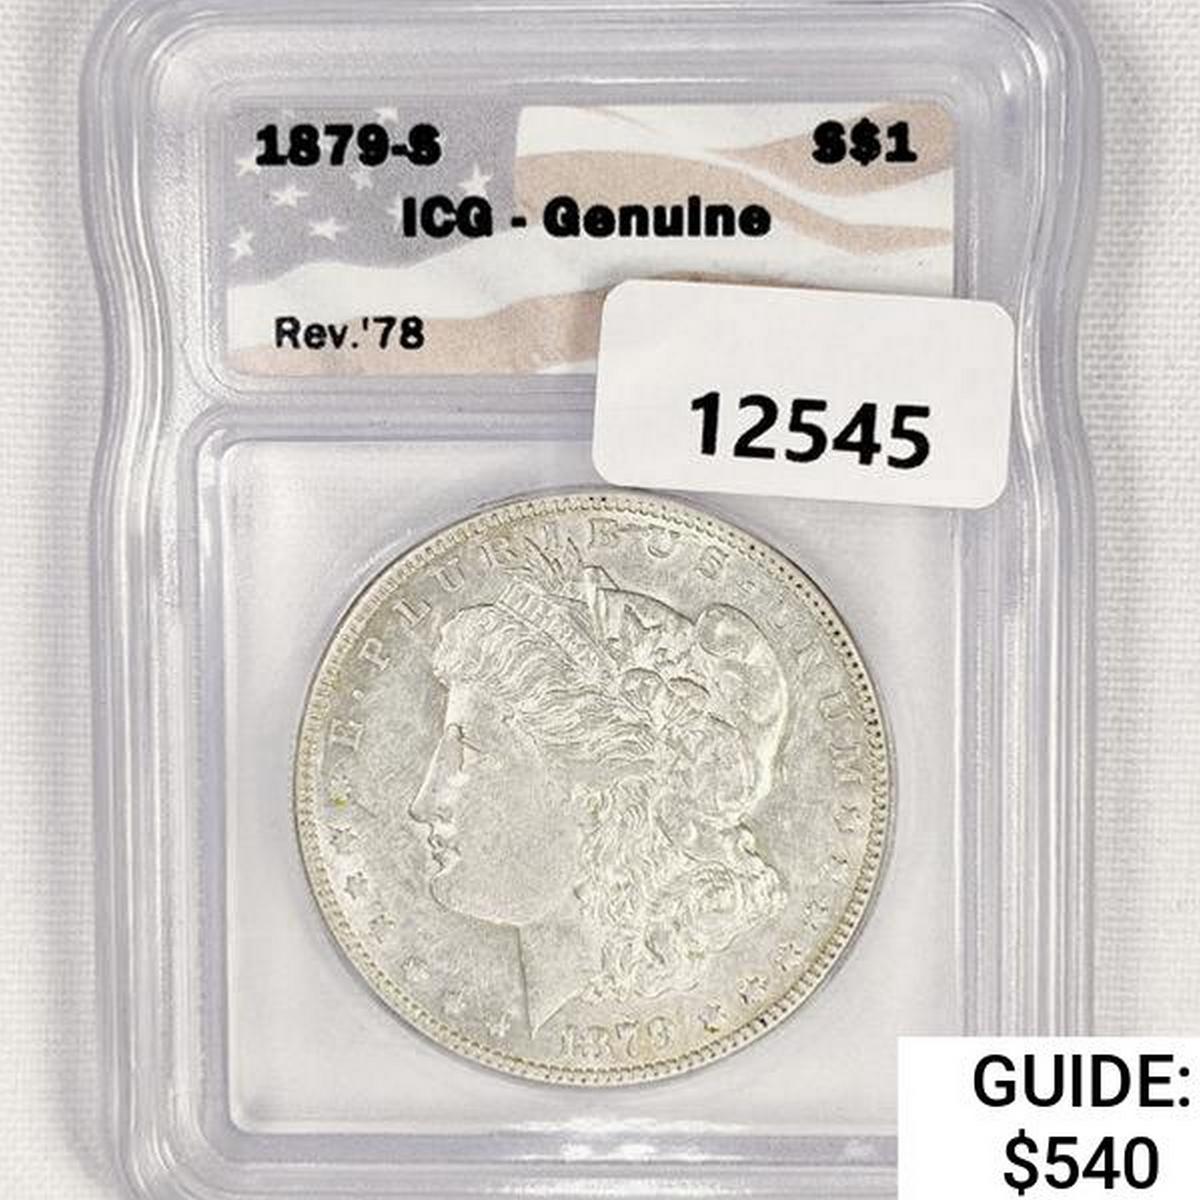 1879-S Rev 78 Morgan Silver Dollar ICG Genuine